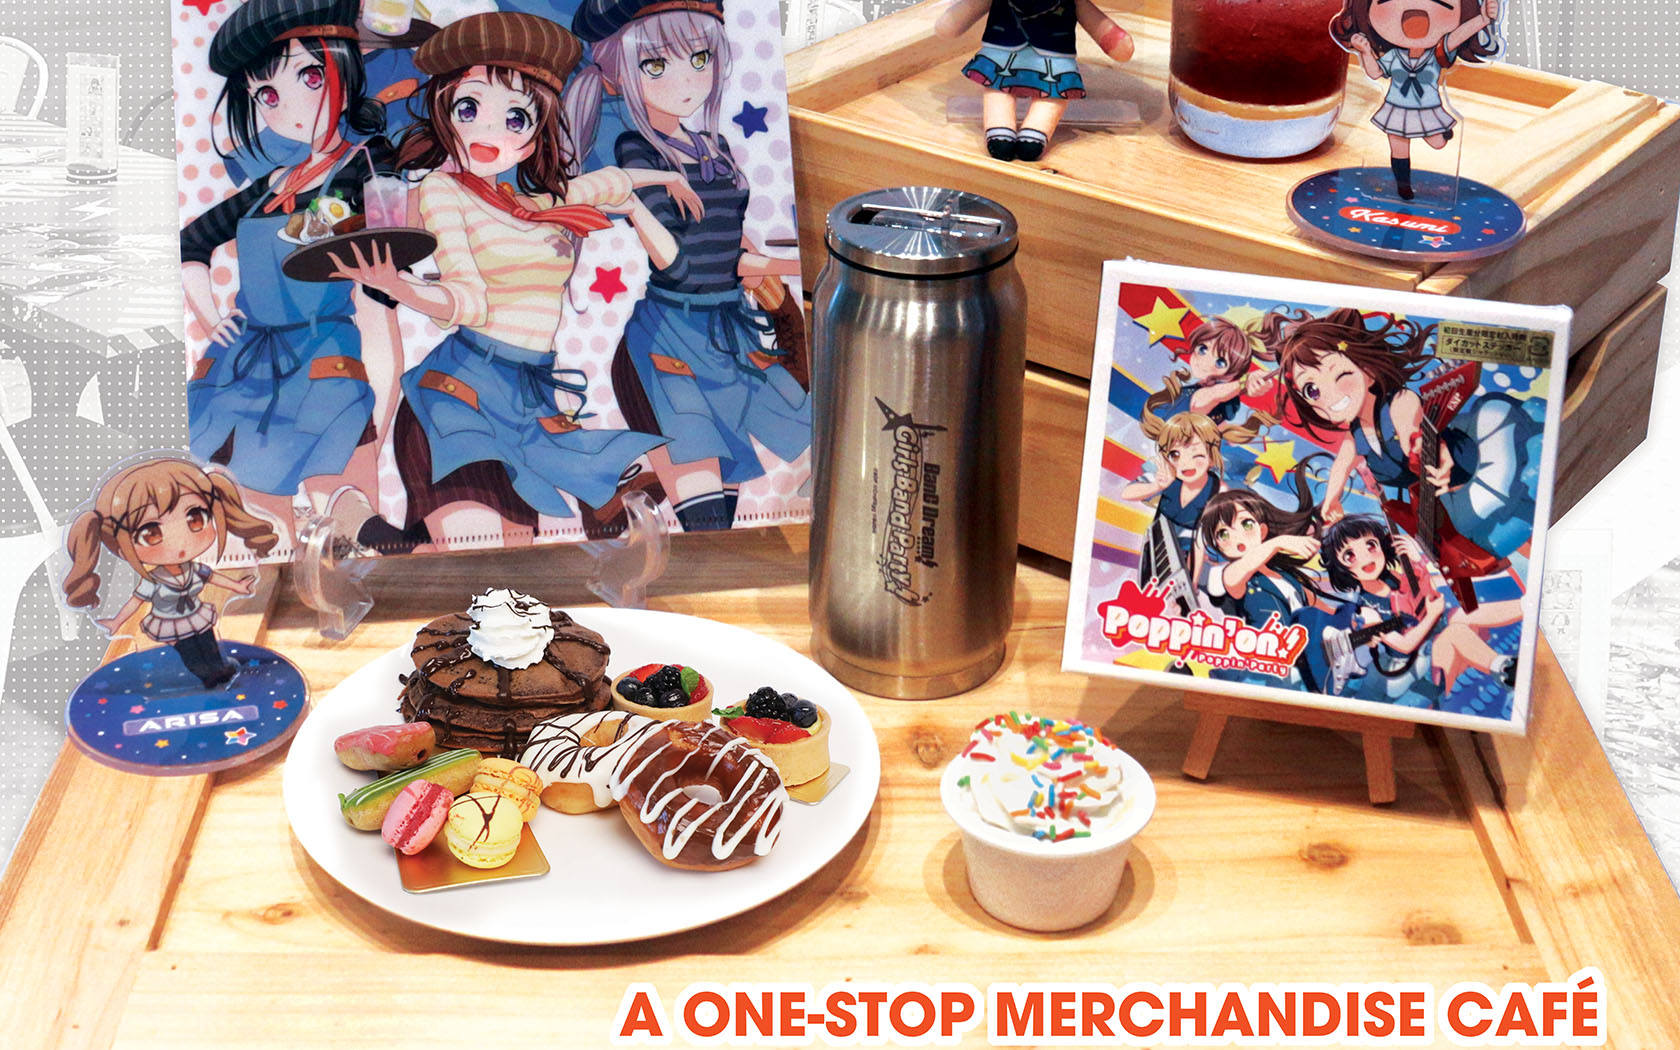 Anime Merchandise and dessert platter